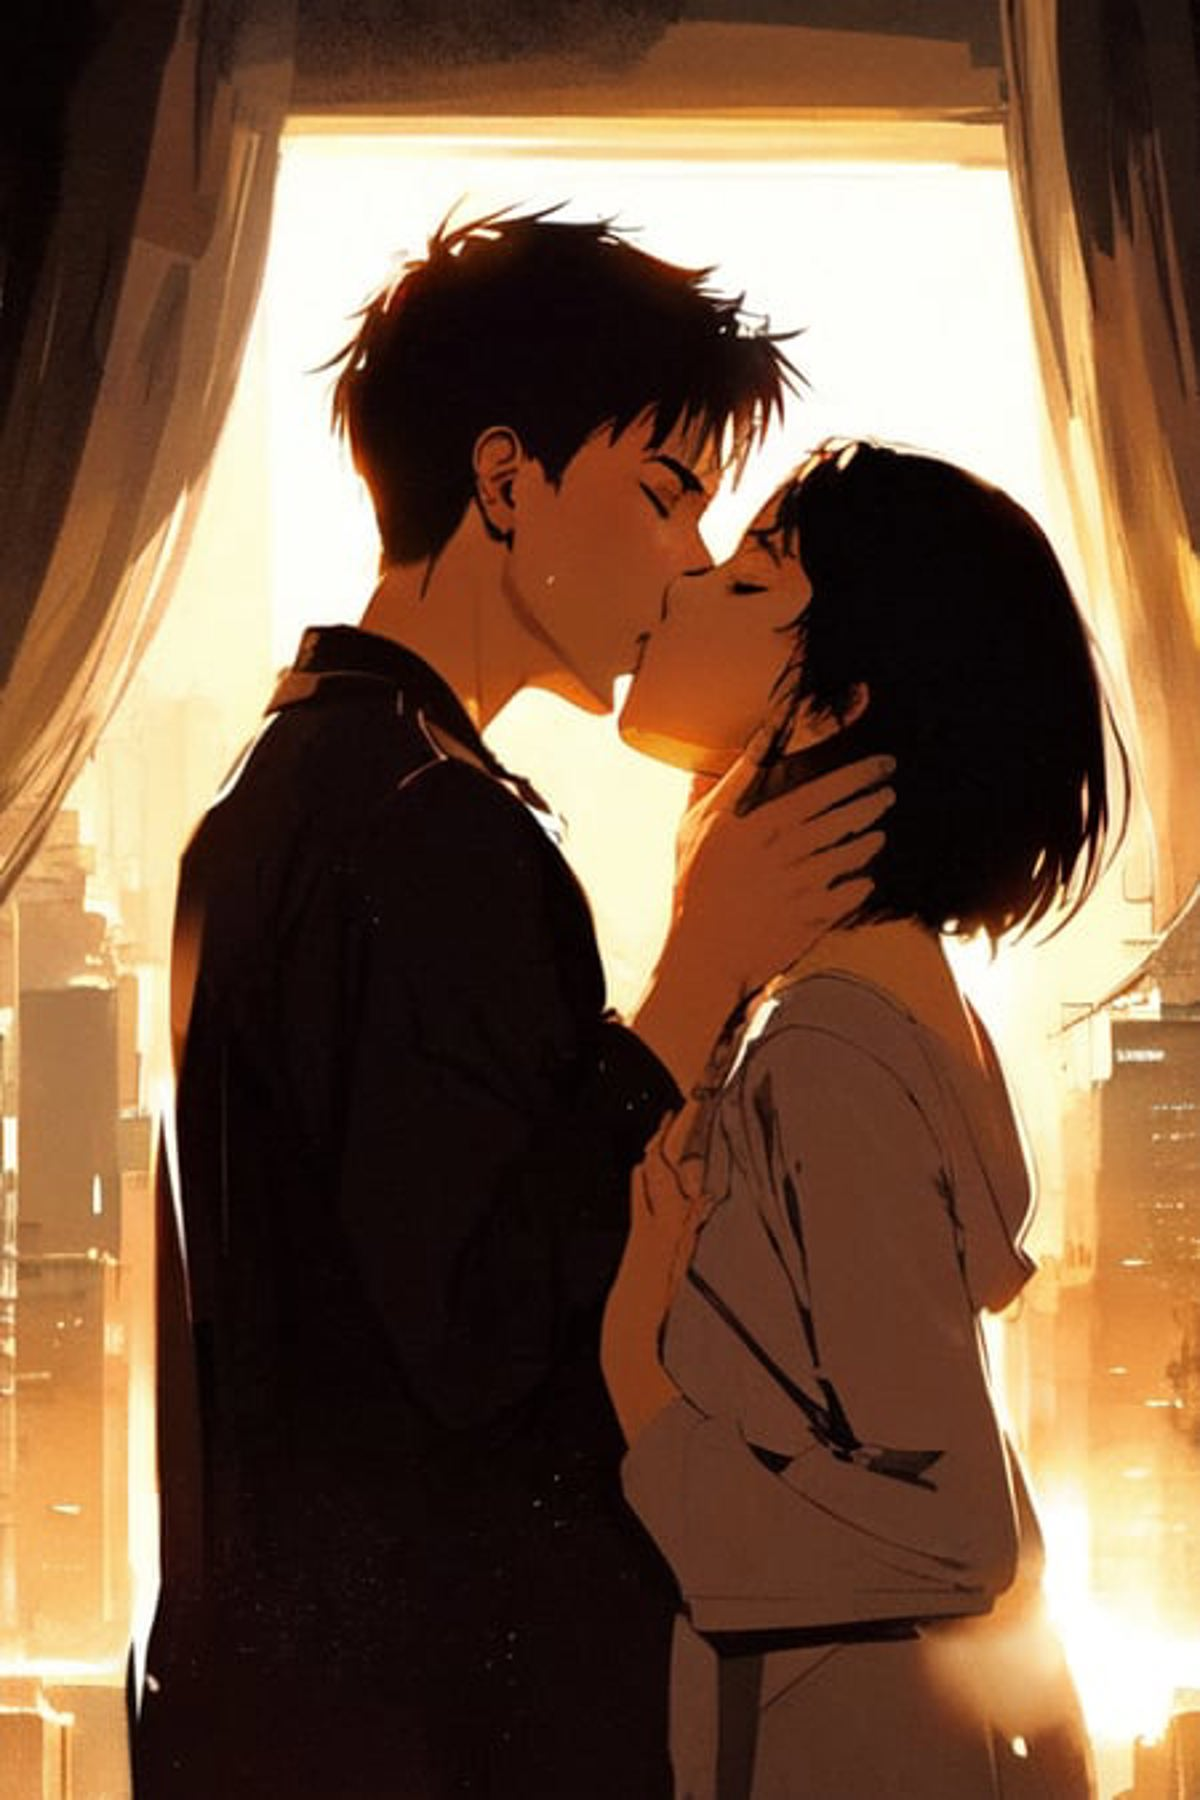 anime boy and girl kiss